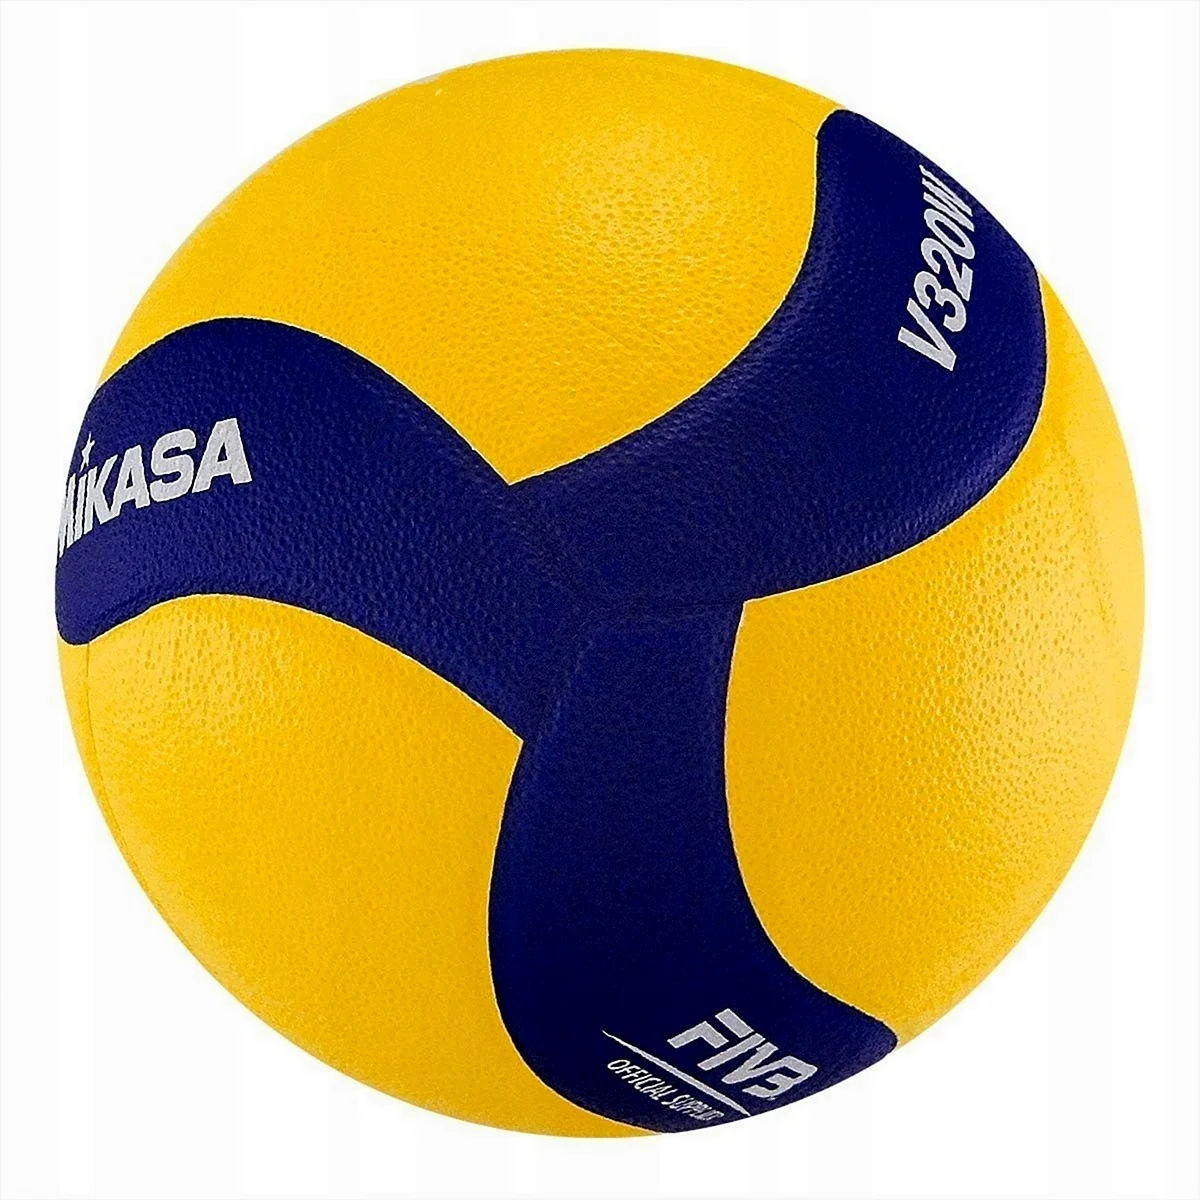 Волейбольный мяч Микаса v320w